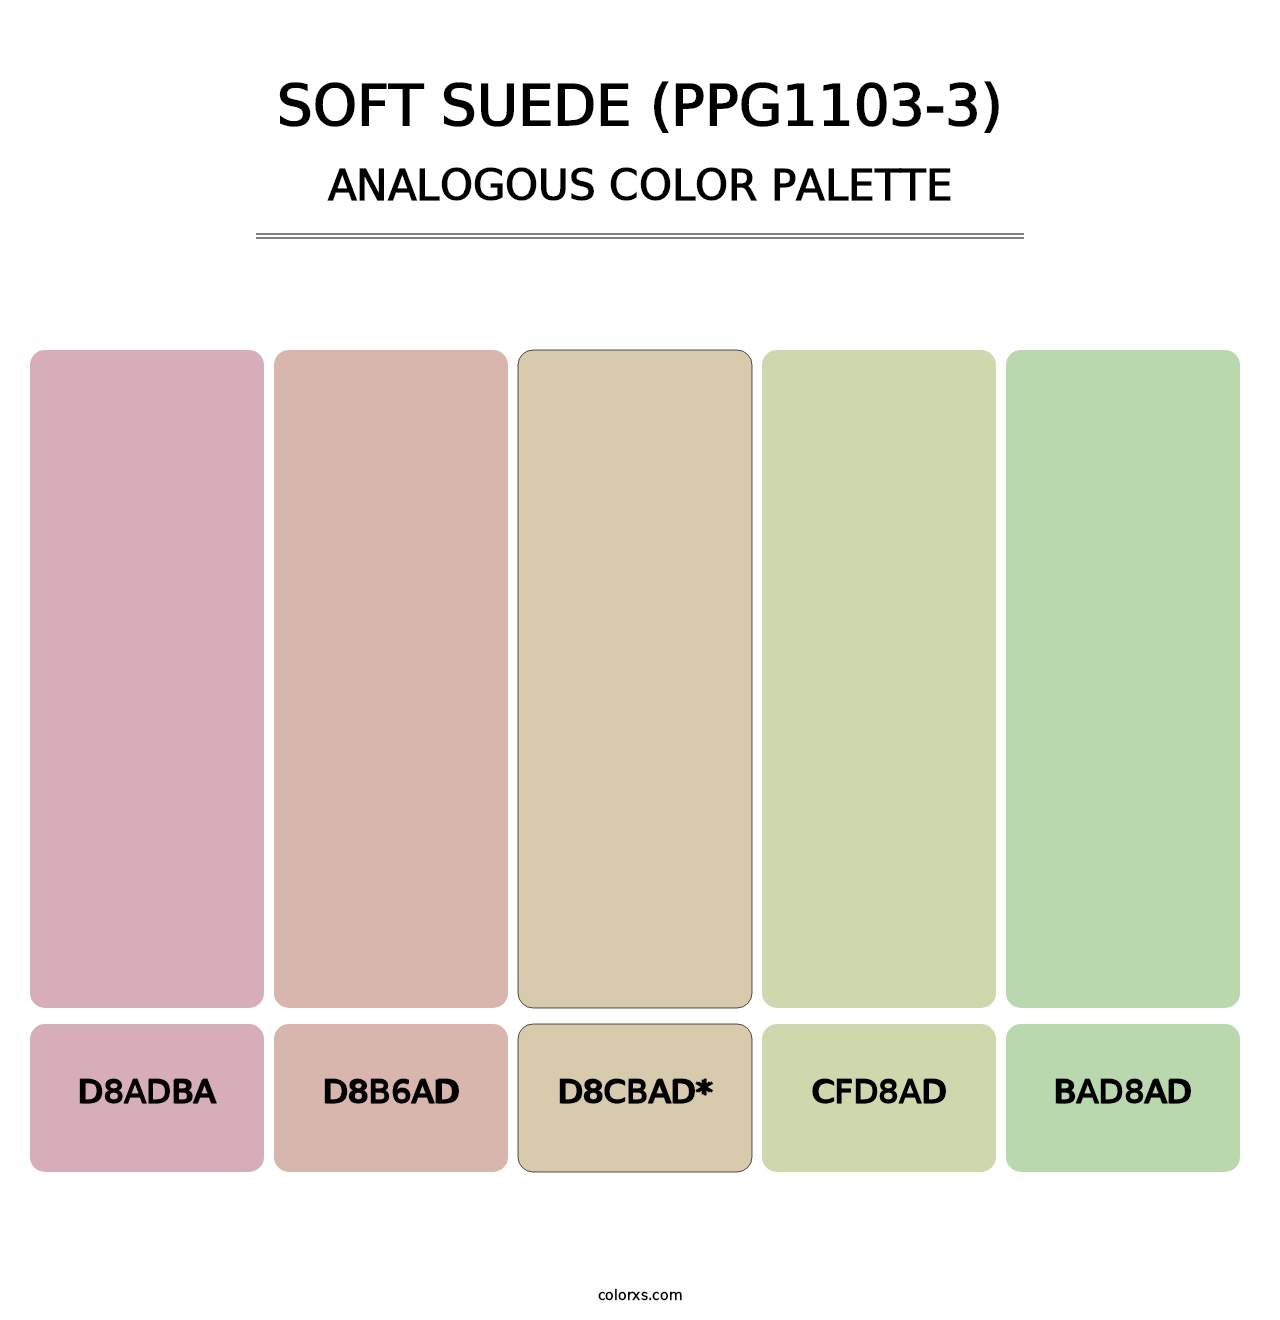 Soft Suede (PPG1103-3) - Analogous Color Palette